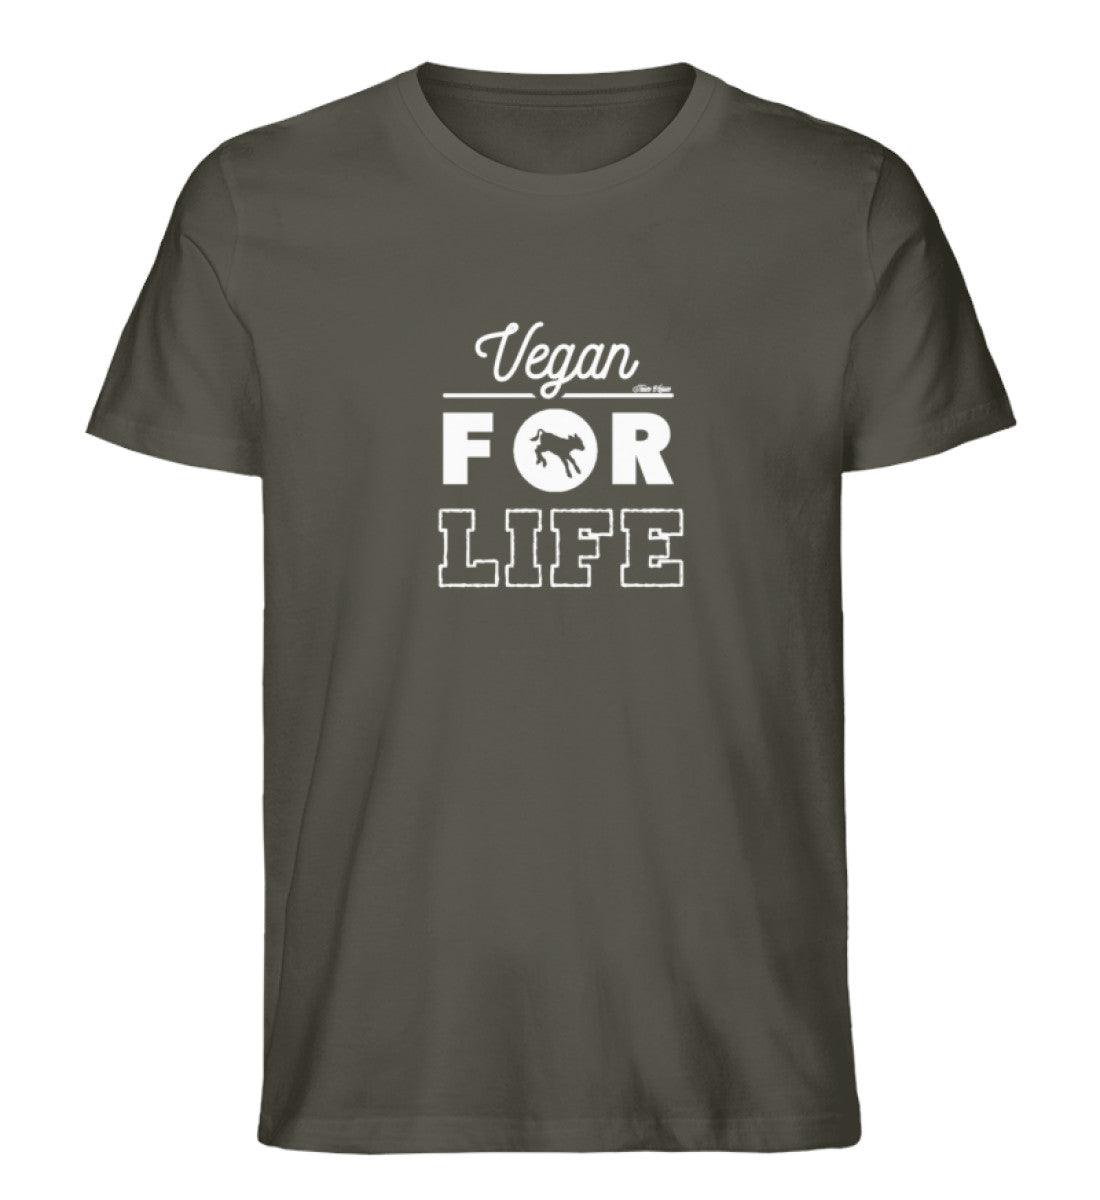 Vegan for life - Unisex Organic Shirt - Team Vegan © vegan t shirt